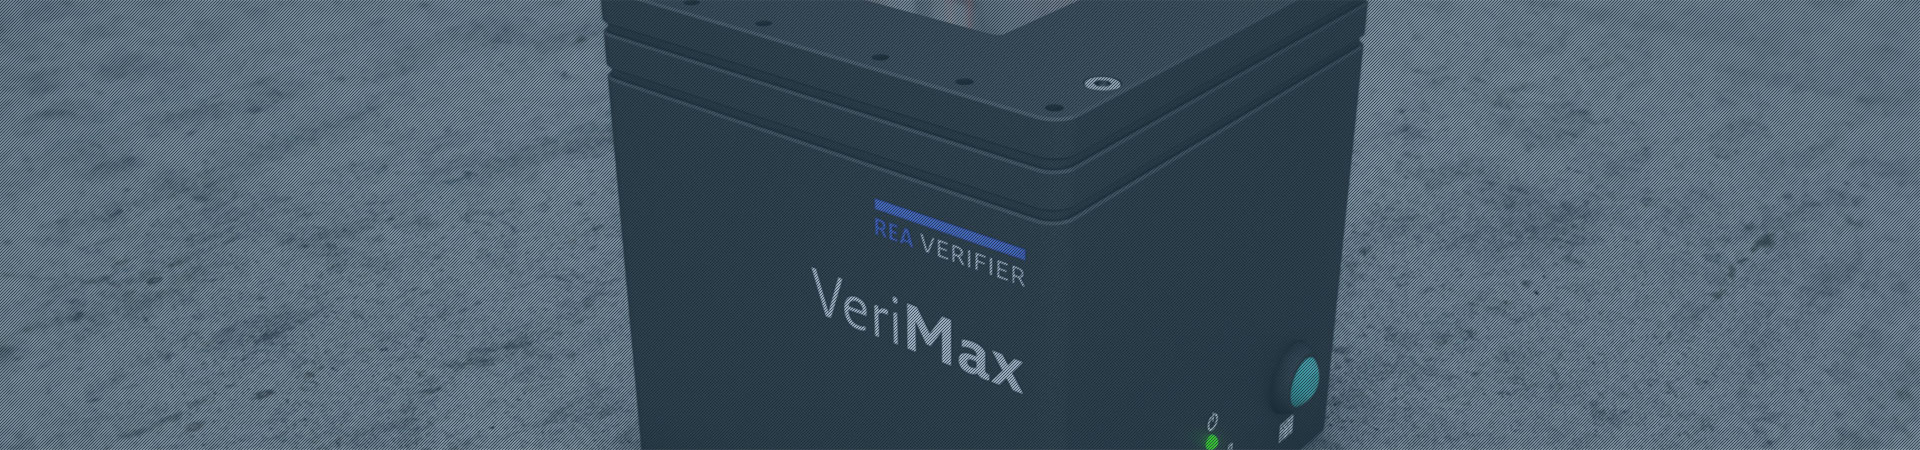 Code Pürfgerät für die Maschinenintegration - REA VERIFIER VeriMax